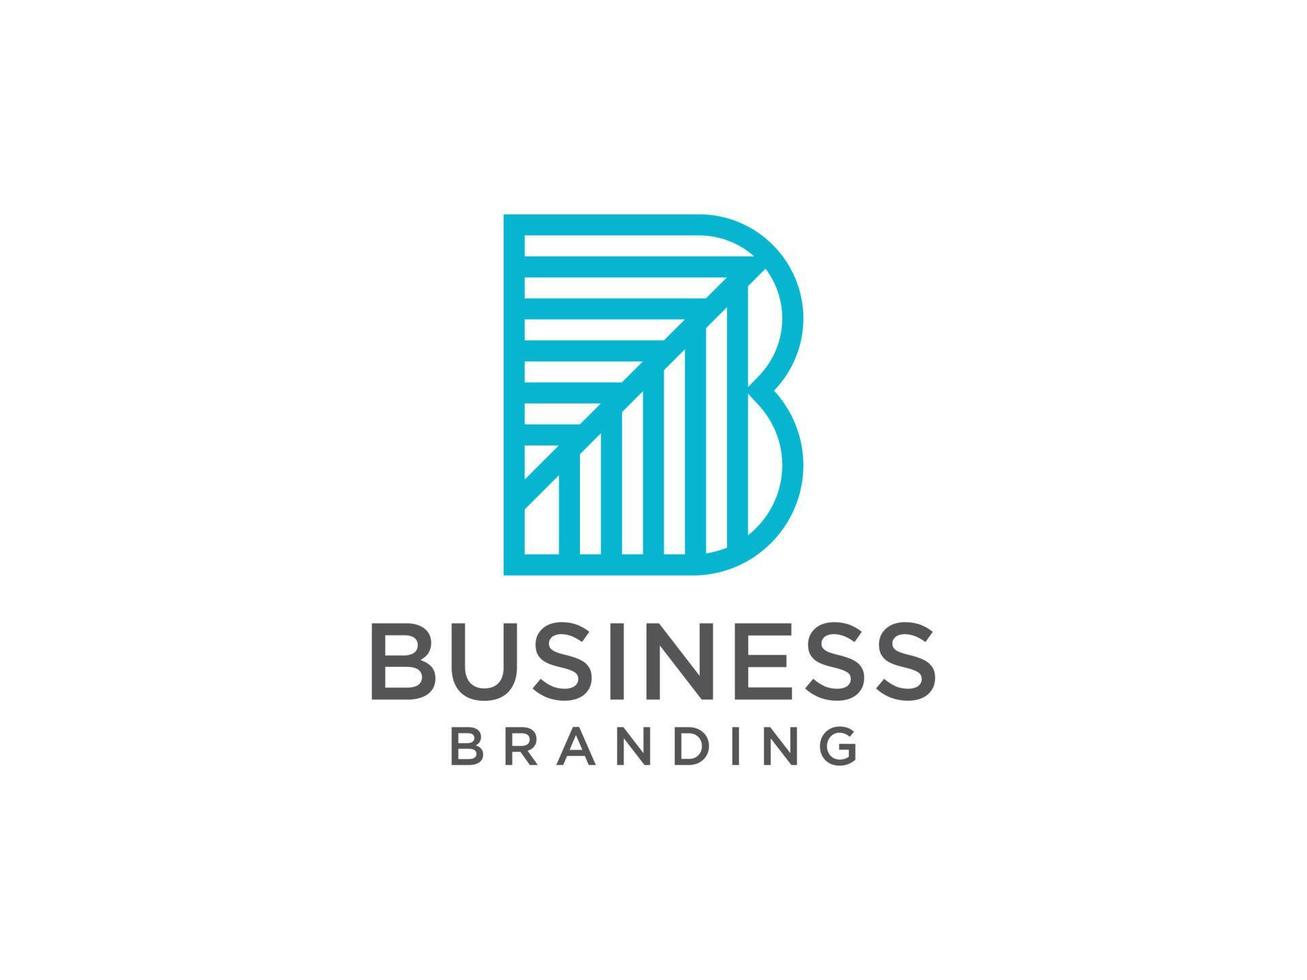 abstraktes anfangsbuchstabe b-logo. grüne geometrische Form Kleinbuchstaben isoliert auf weißem Hintergrund. verwendbar für Geschäfts- und Markenlogos. flaches Vektor-Logo-Design-Vorlagenelement vektor